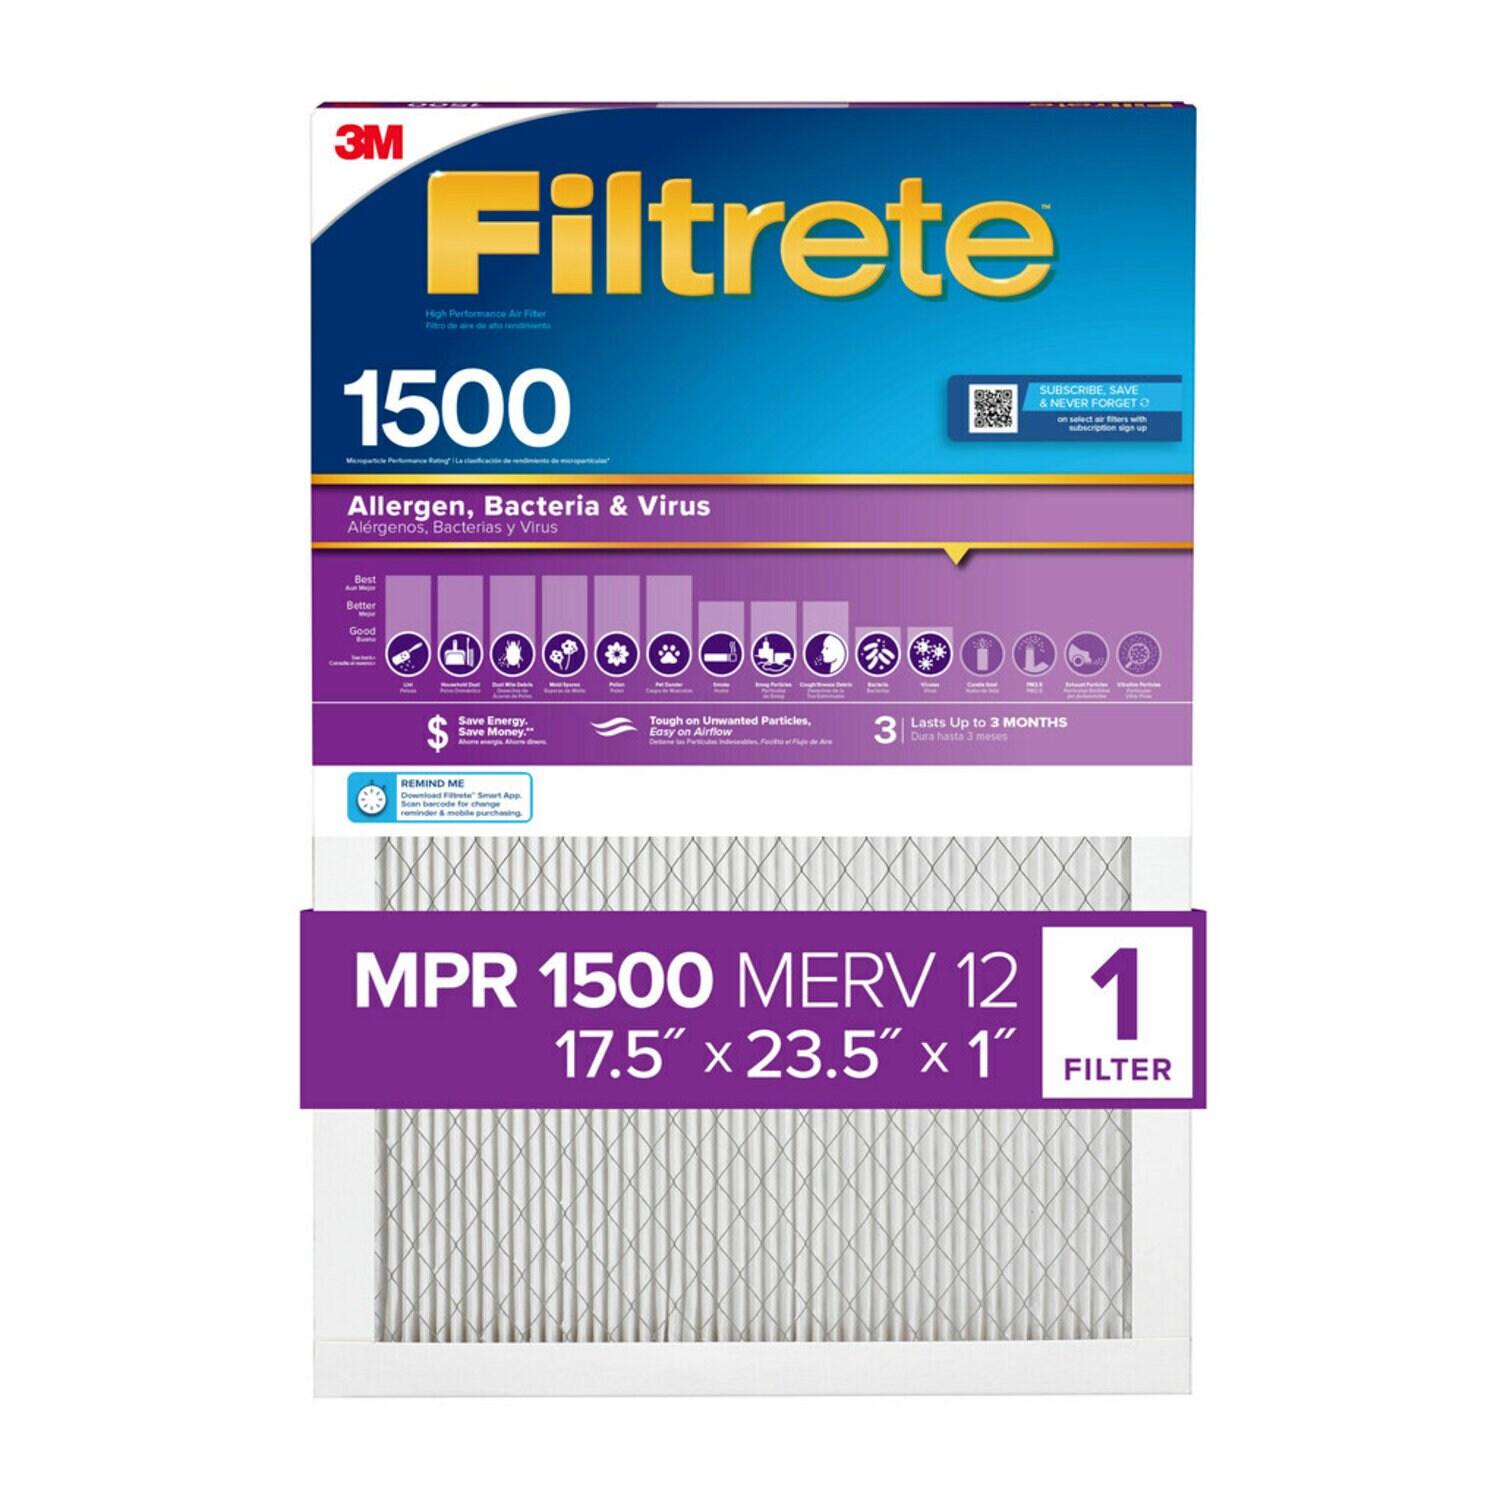 7100268033 - Filtrete High Performance Air Filter 1500 MPR 2029DC-4, 17.5 in x 23.5 in x 1 in (44.4 cm x 59.6 cm x 2.5 cm)